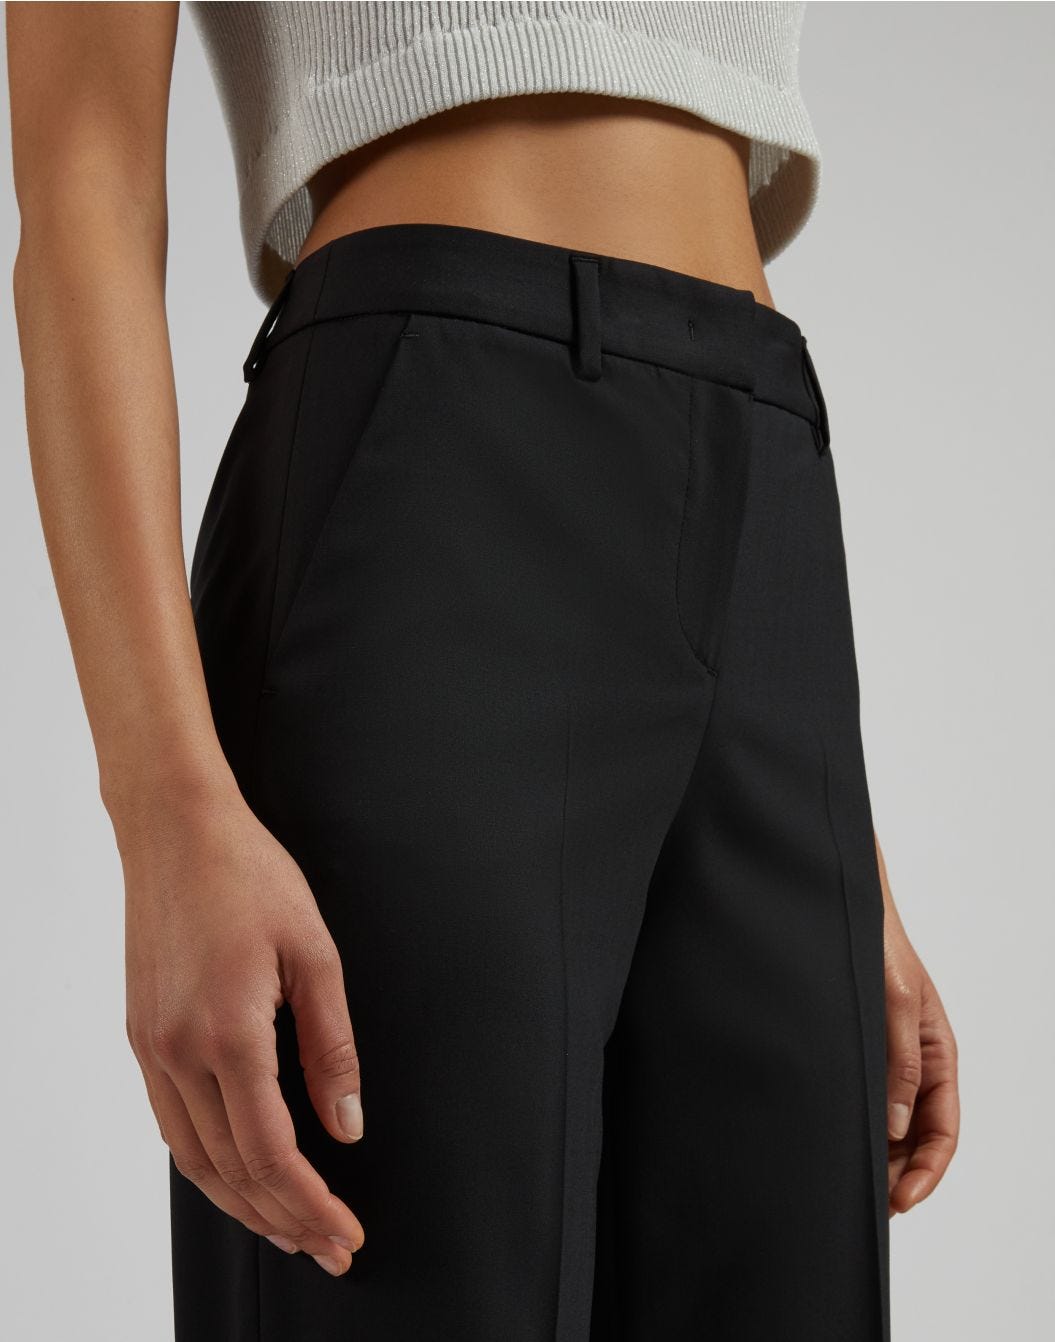 Pantalon noir jambe droite régulière en tissu de laine stretch